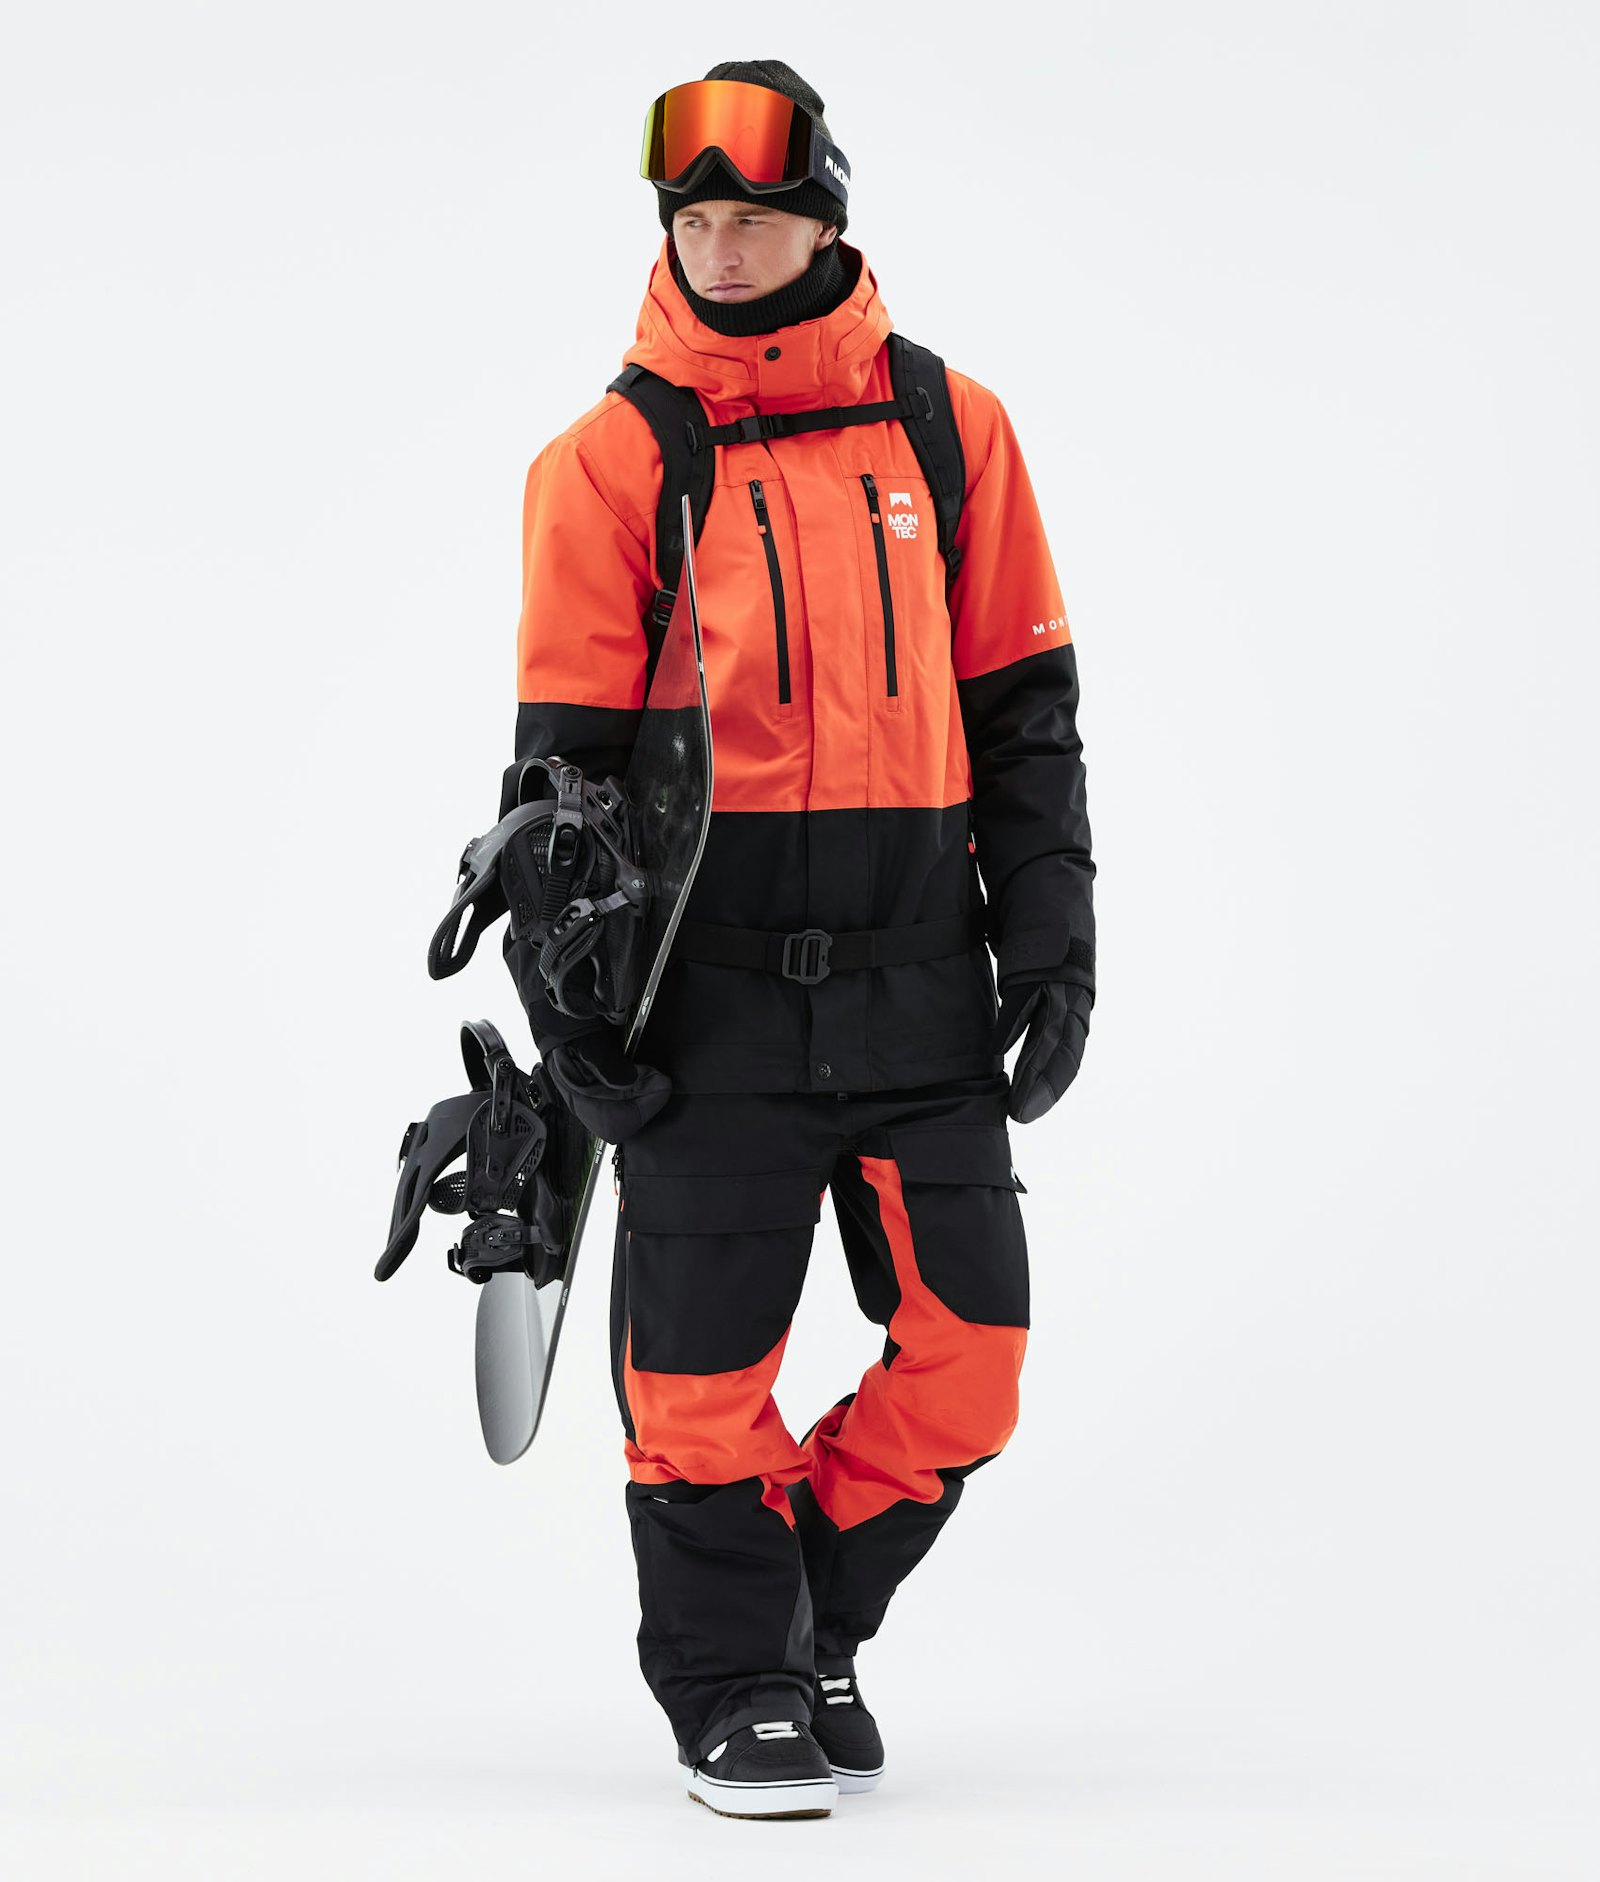 Fawk 2021 スノーボードジャケット メンズ Orange/Black